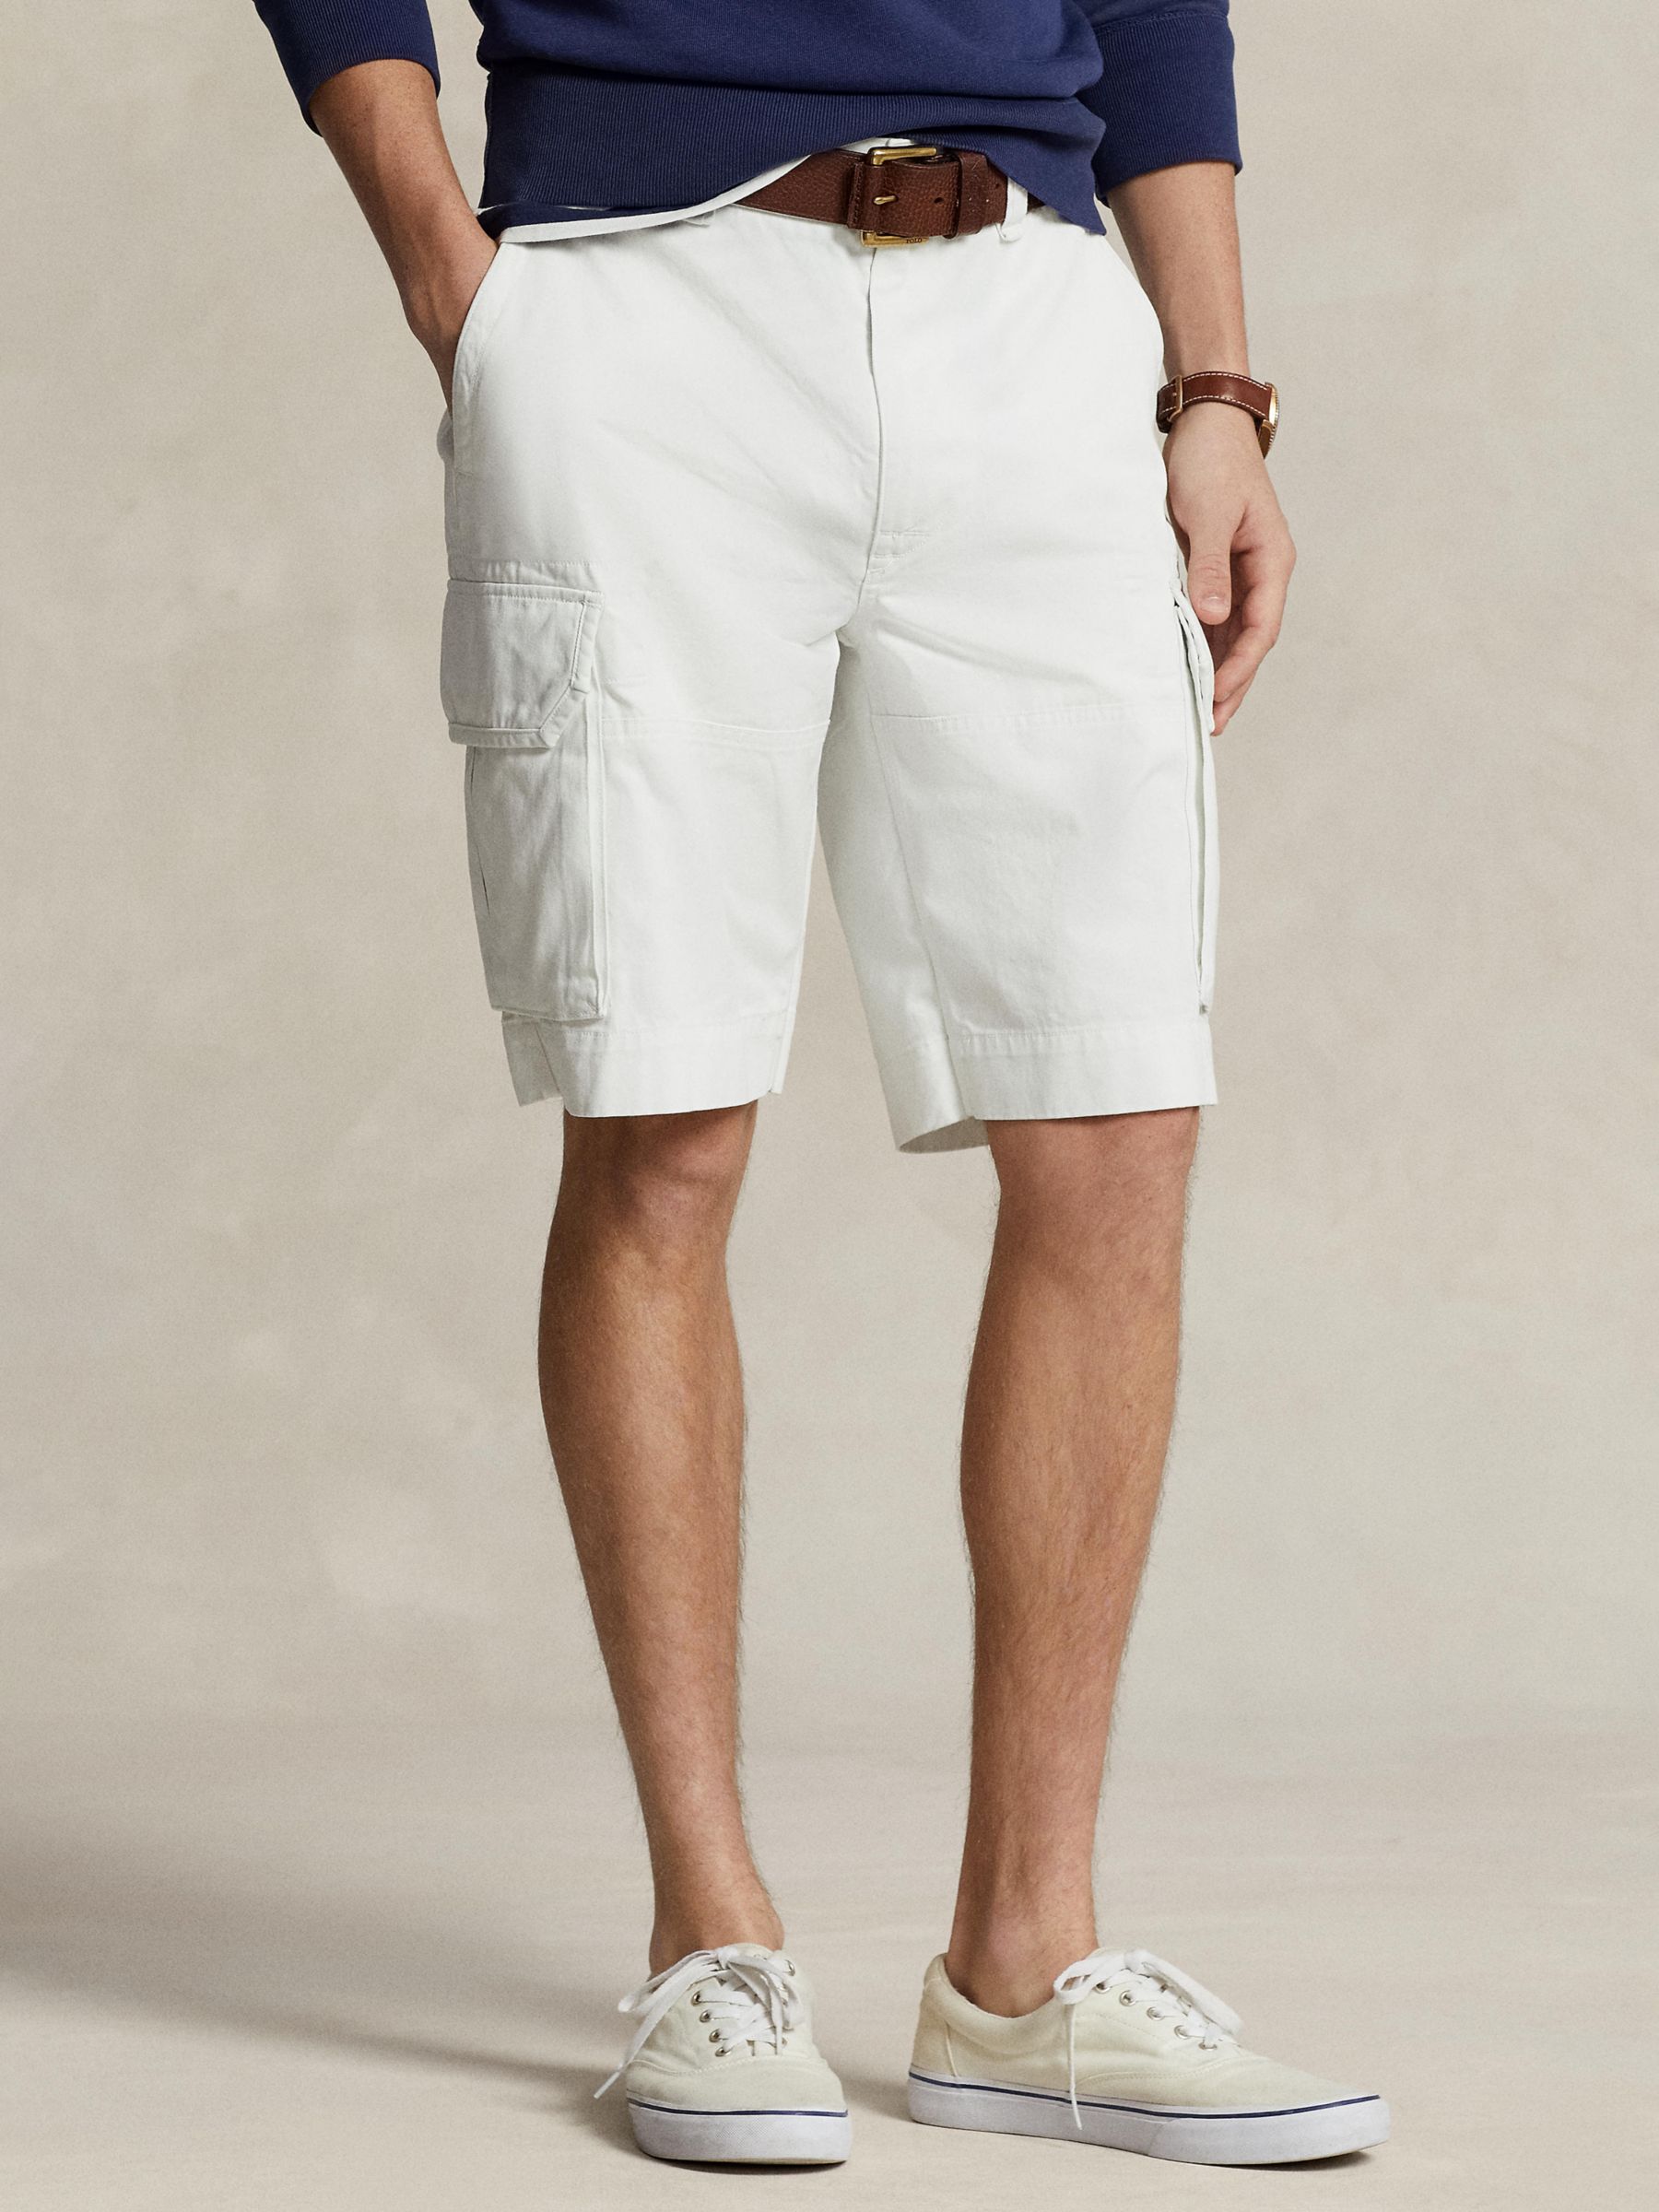 Polo Ralph Lauren Gelar Cargo Shorts, Deckwash White, 38R